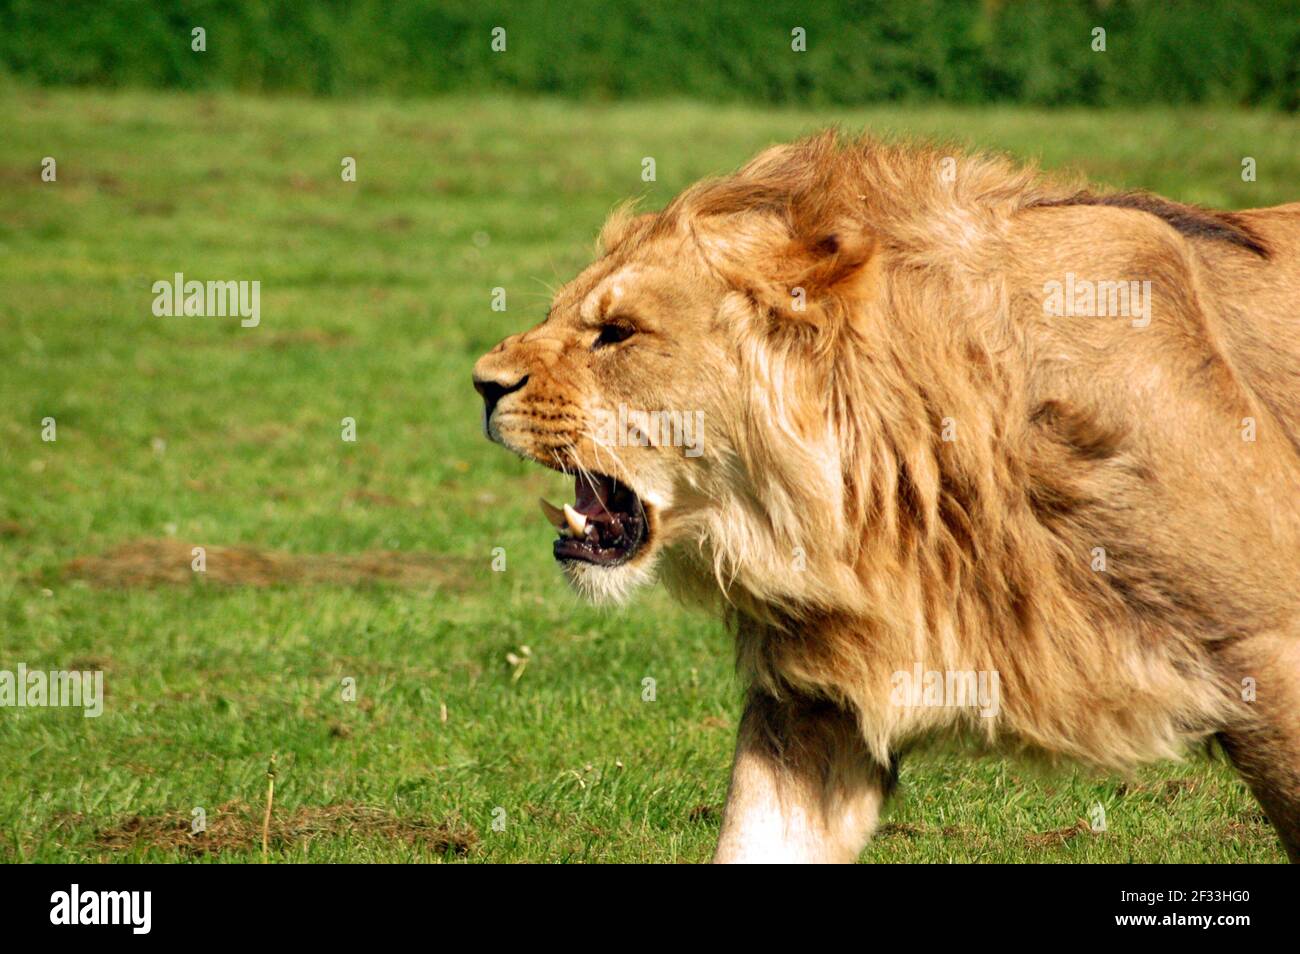 Lion Roaring 'Panthera Leo', harnade de lion africain. Un lion mâle hurlant alors qu'il tache une lionne. Banque D'Images